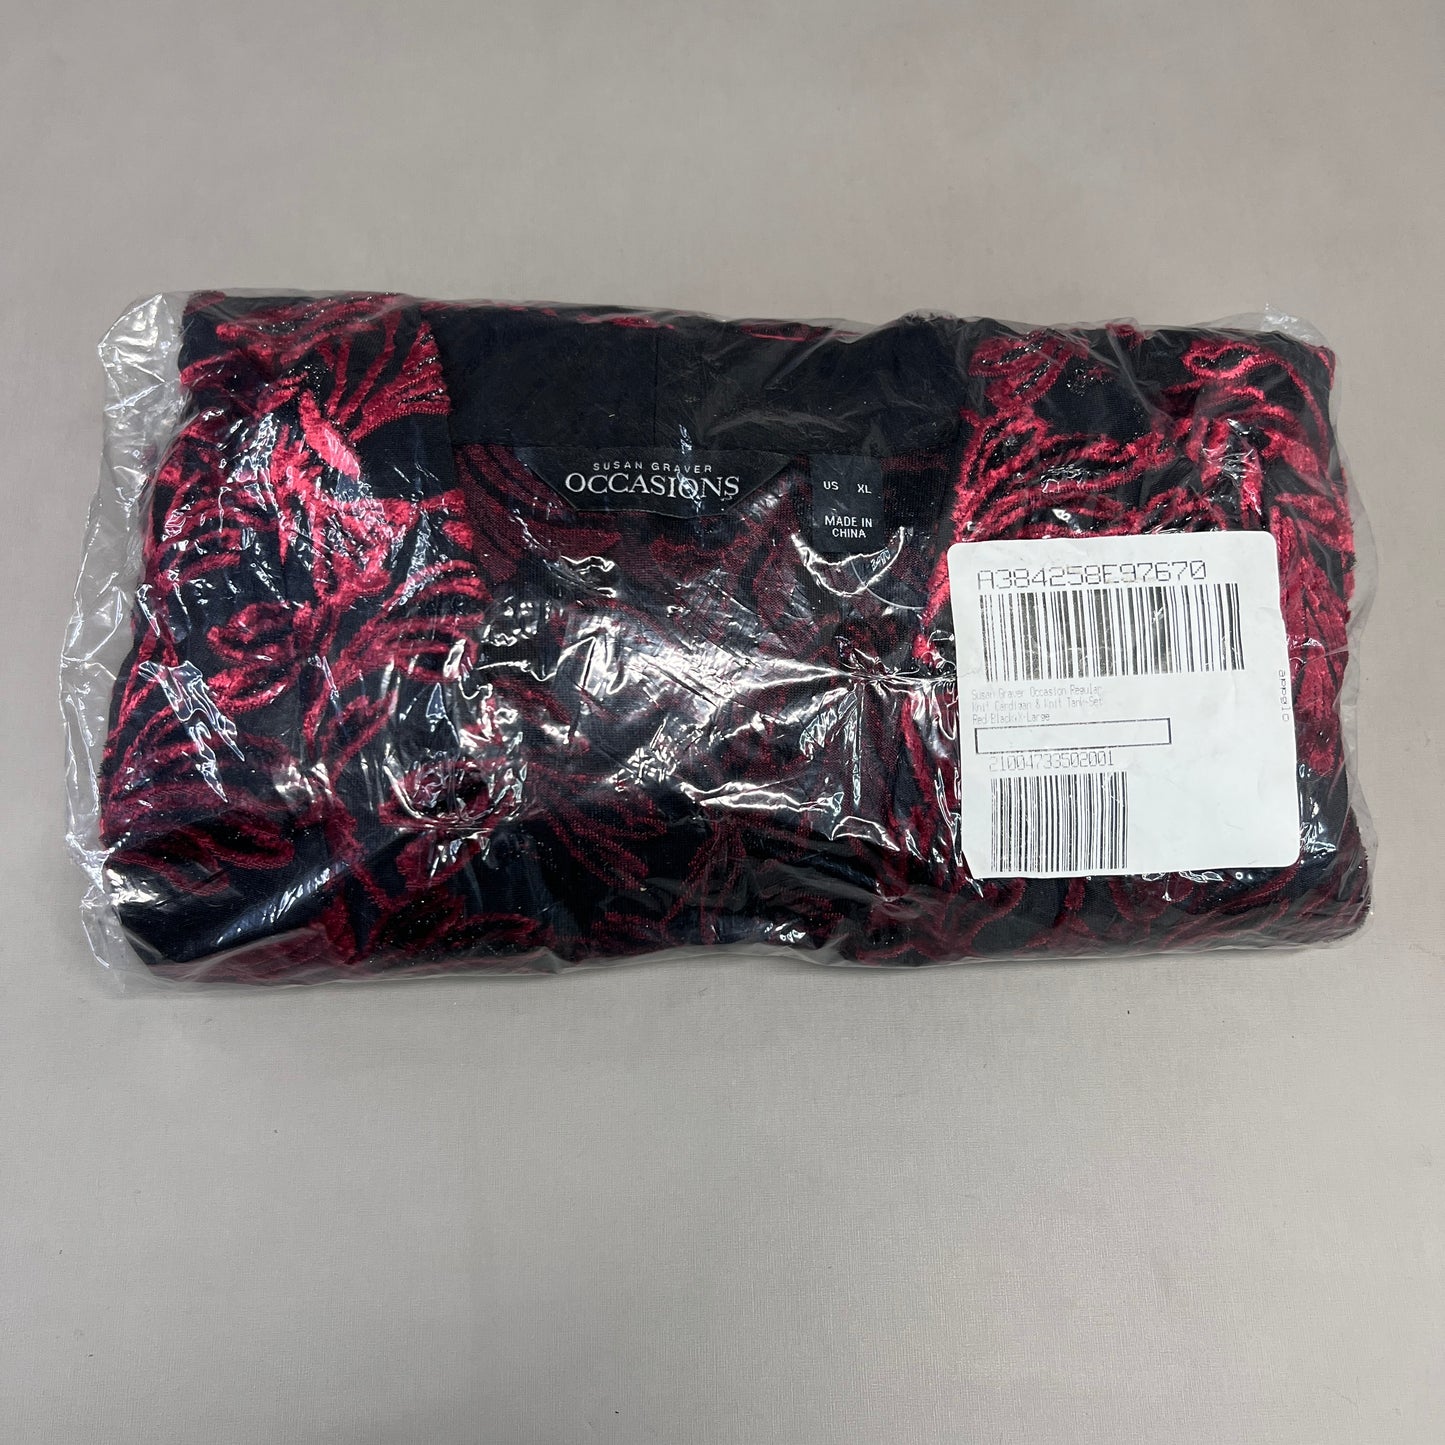 SUSAN GRAVER Knit Cardigan & Tank Set Women's Sz XL Red / Black A384258E97670 (New)